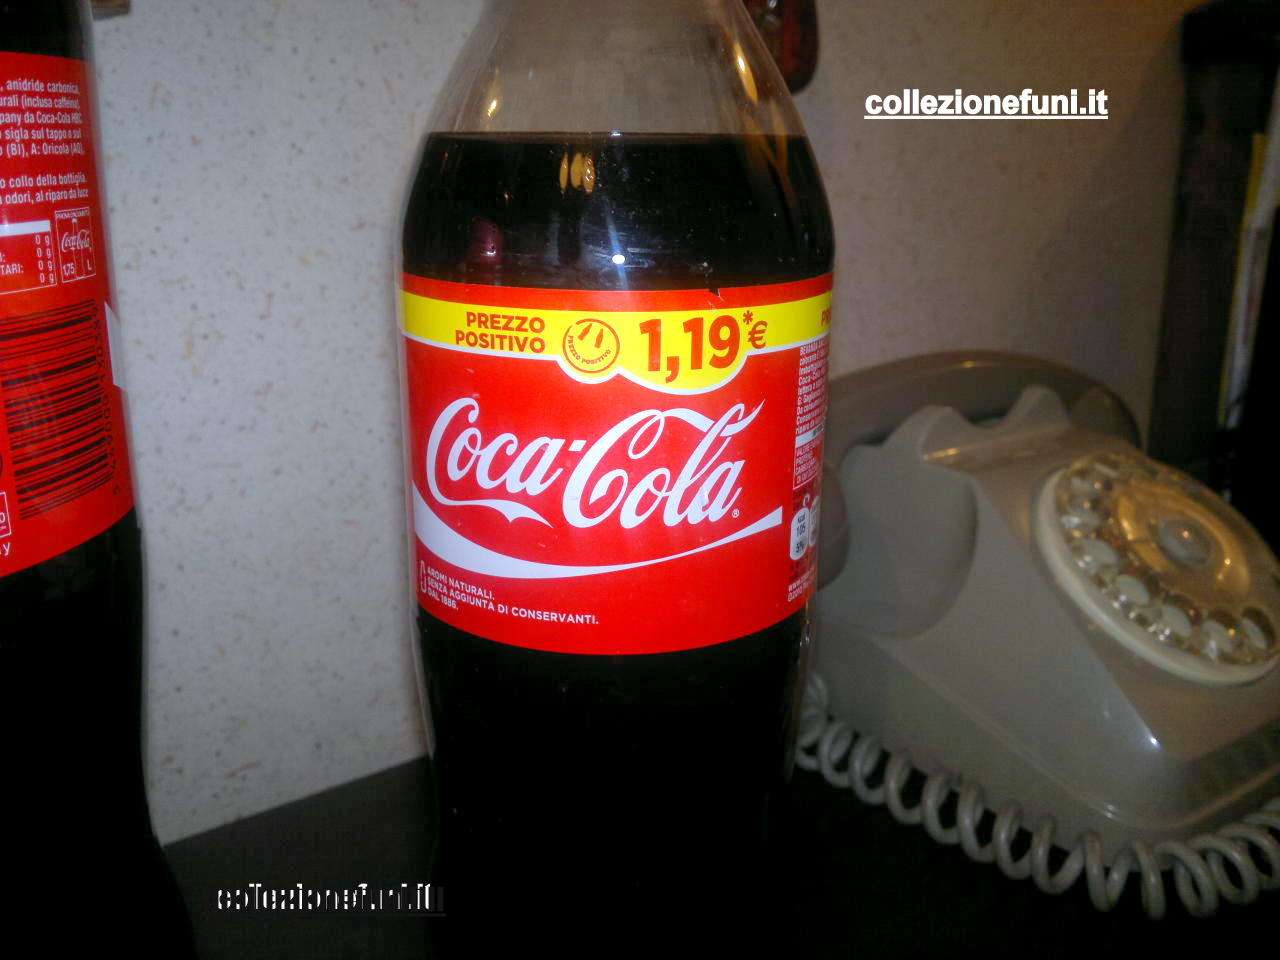 Coca Cola Prezzo Positivo 1,19 euro